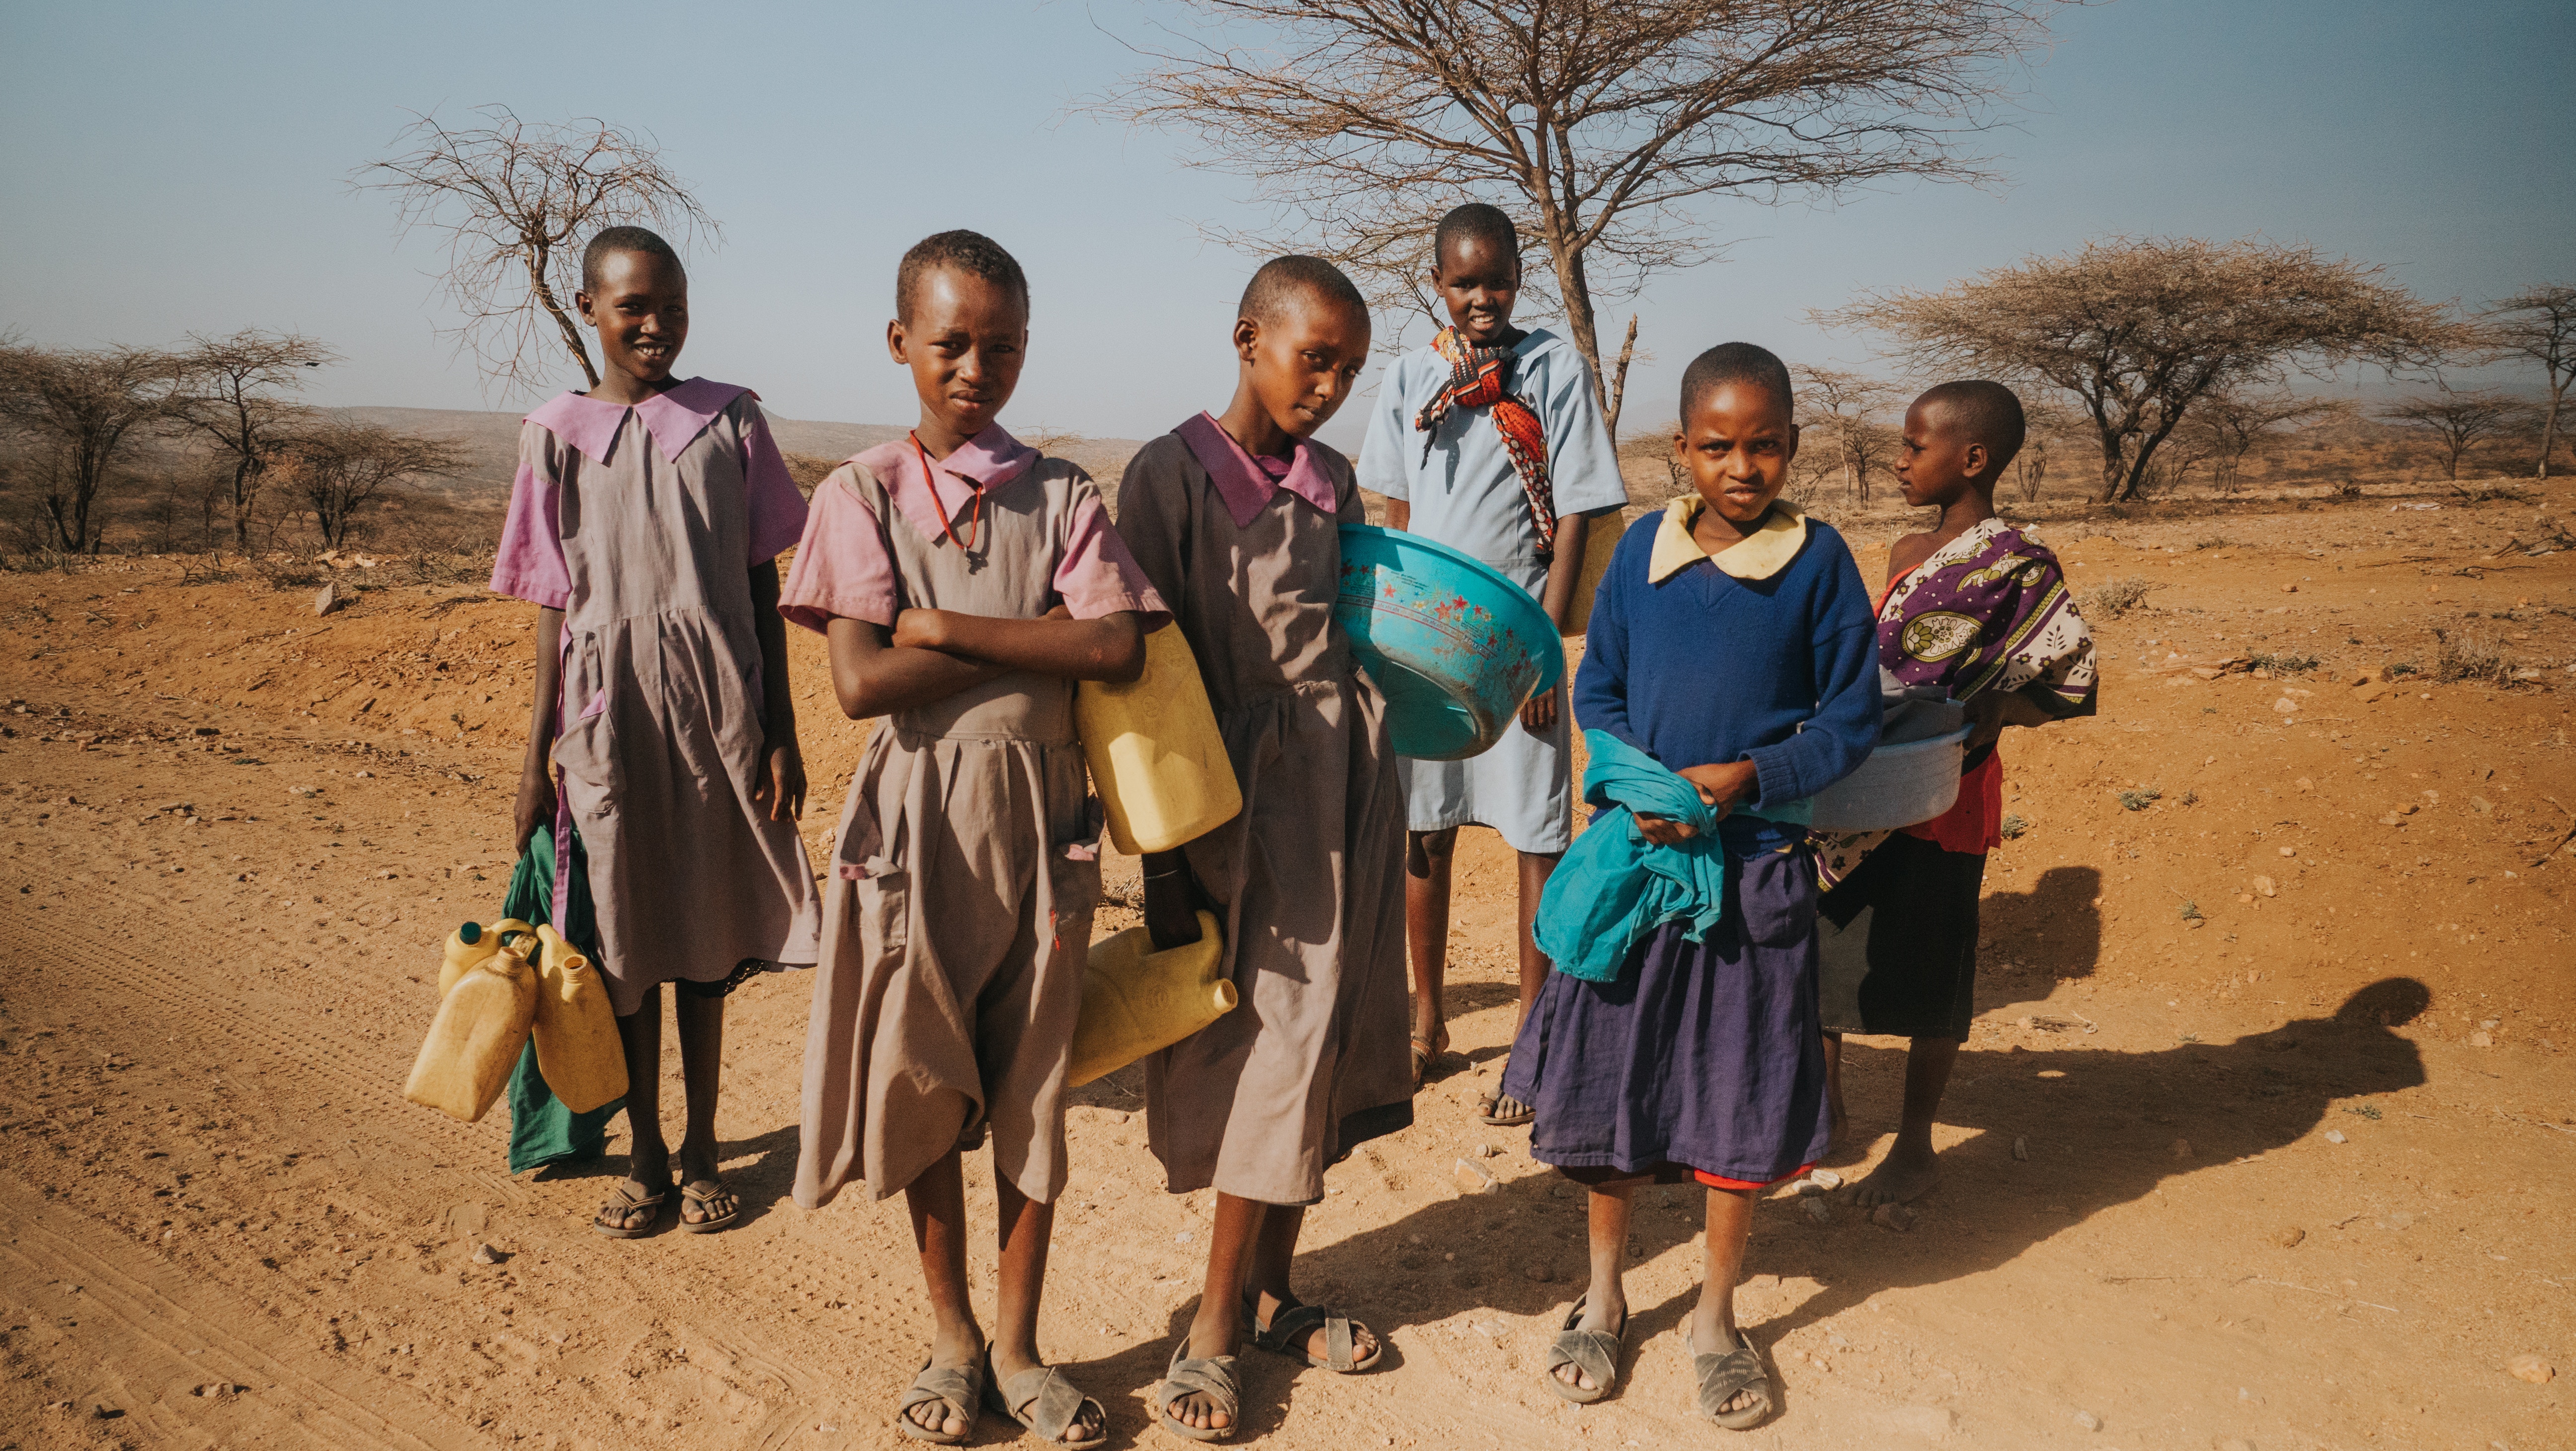 Sware, Kenia Ich war von diesen Menschen in einer abgelegenen Region im Norden Kenias massiv betroffen. Das Leben ist hart, Wasser ist ein paar Kilometer entfernt in einem ausgetrockneten Flussbett und diese Mädchen laufen ein paar Mal am Tag hin und zurück.